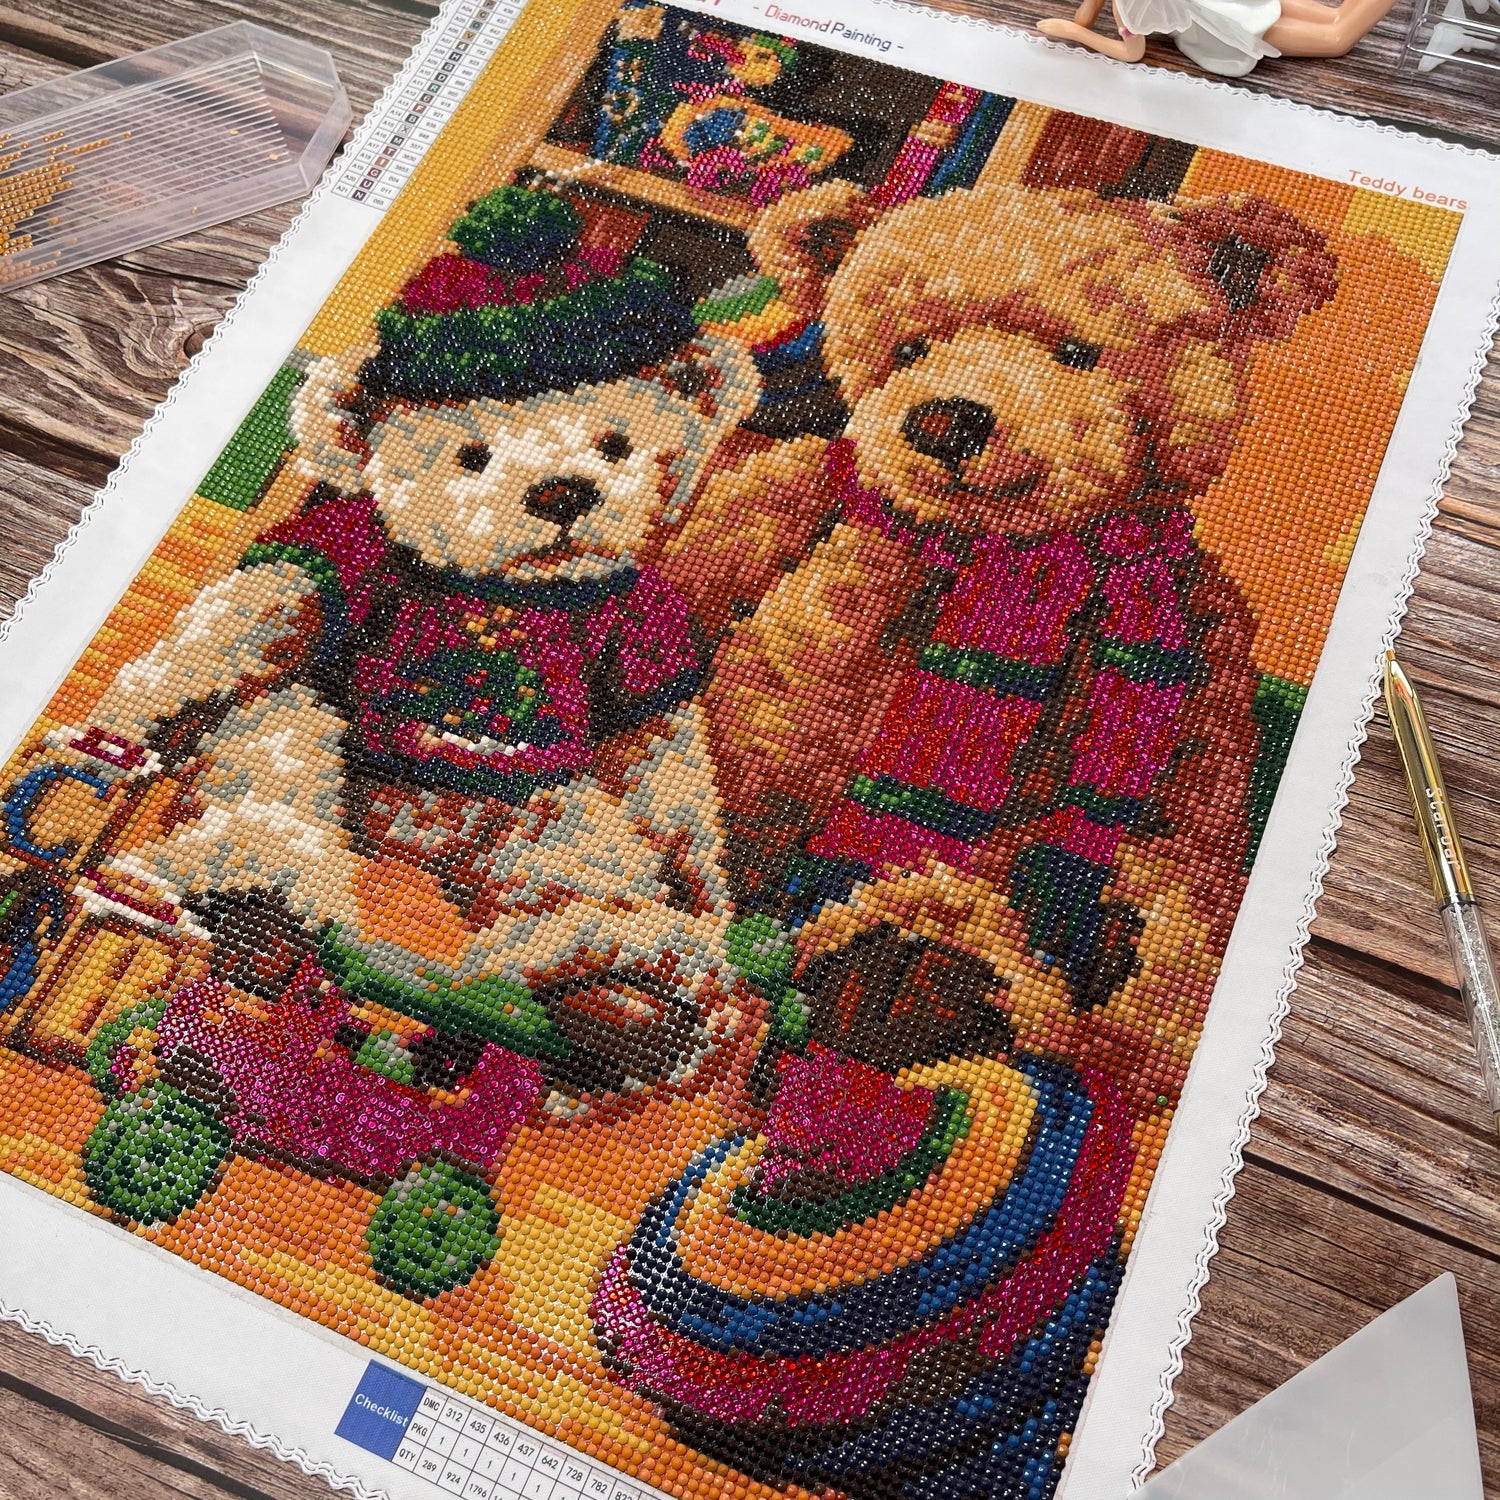 Cute Teddy Bears - Diamond Painting Kit – All Diamond Painting